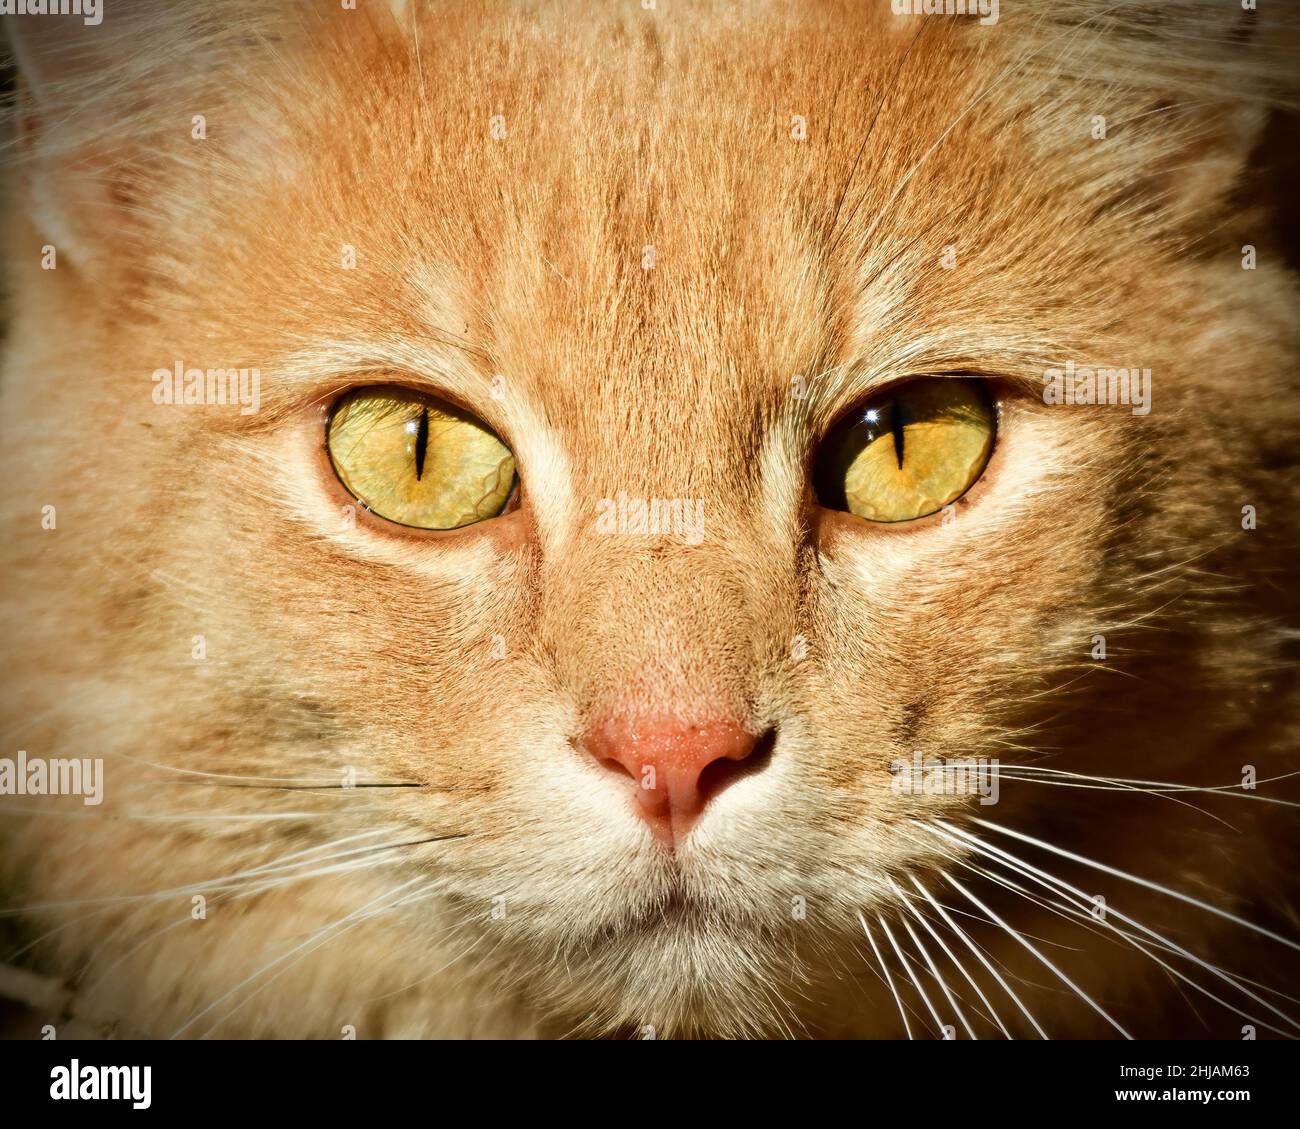 Une image rapprochée du visage d'un chat domestique Banque D'Images